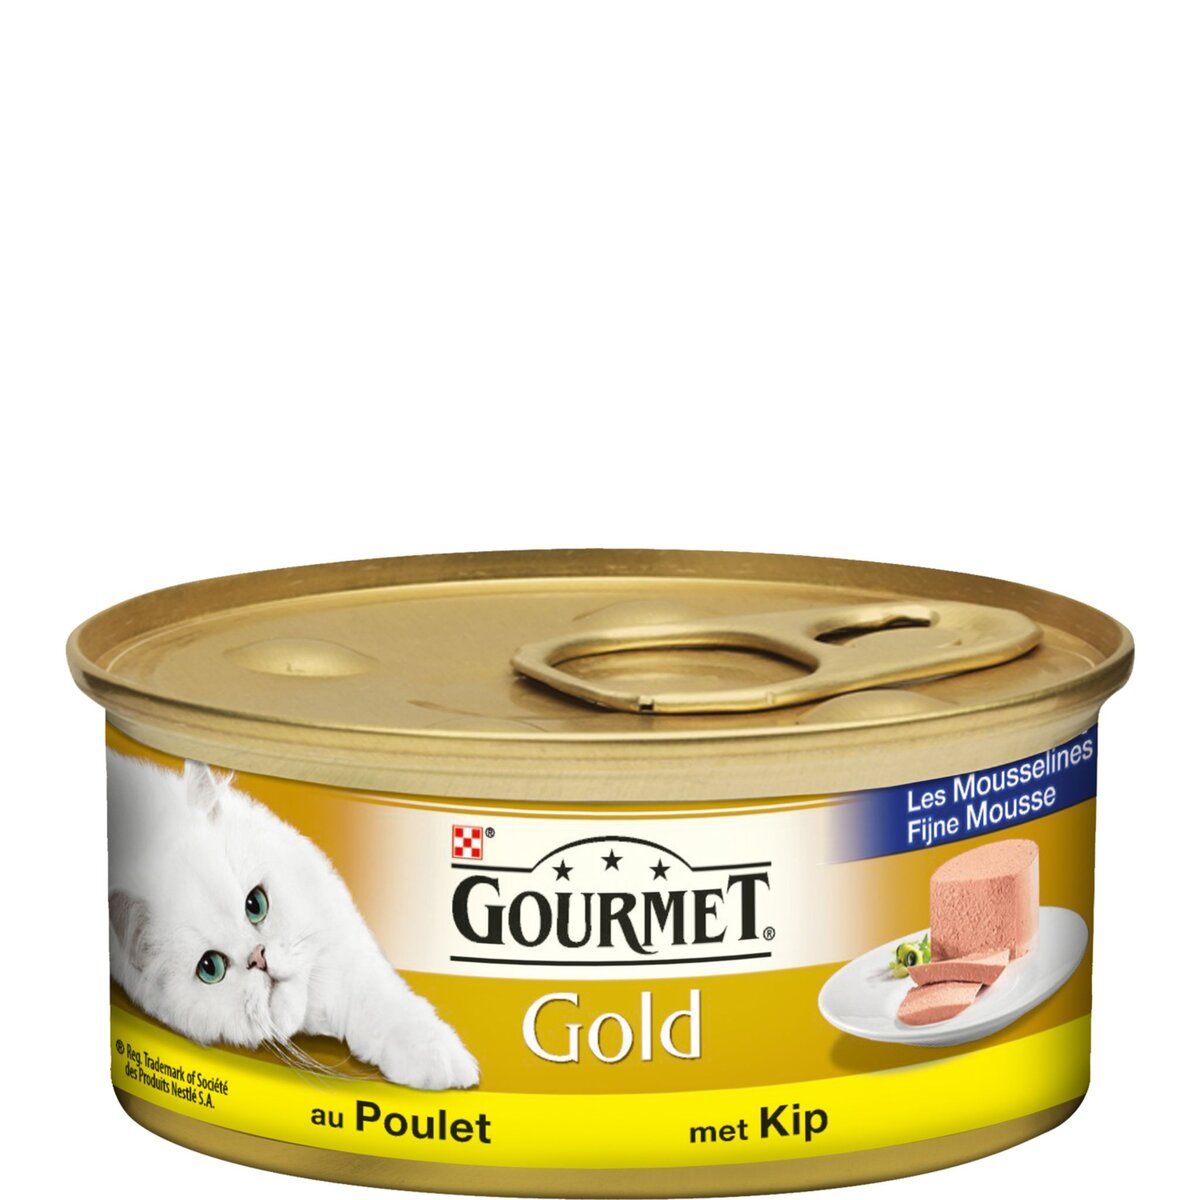 Patée pour chat gold, Les mousslines, Gourmet